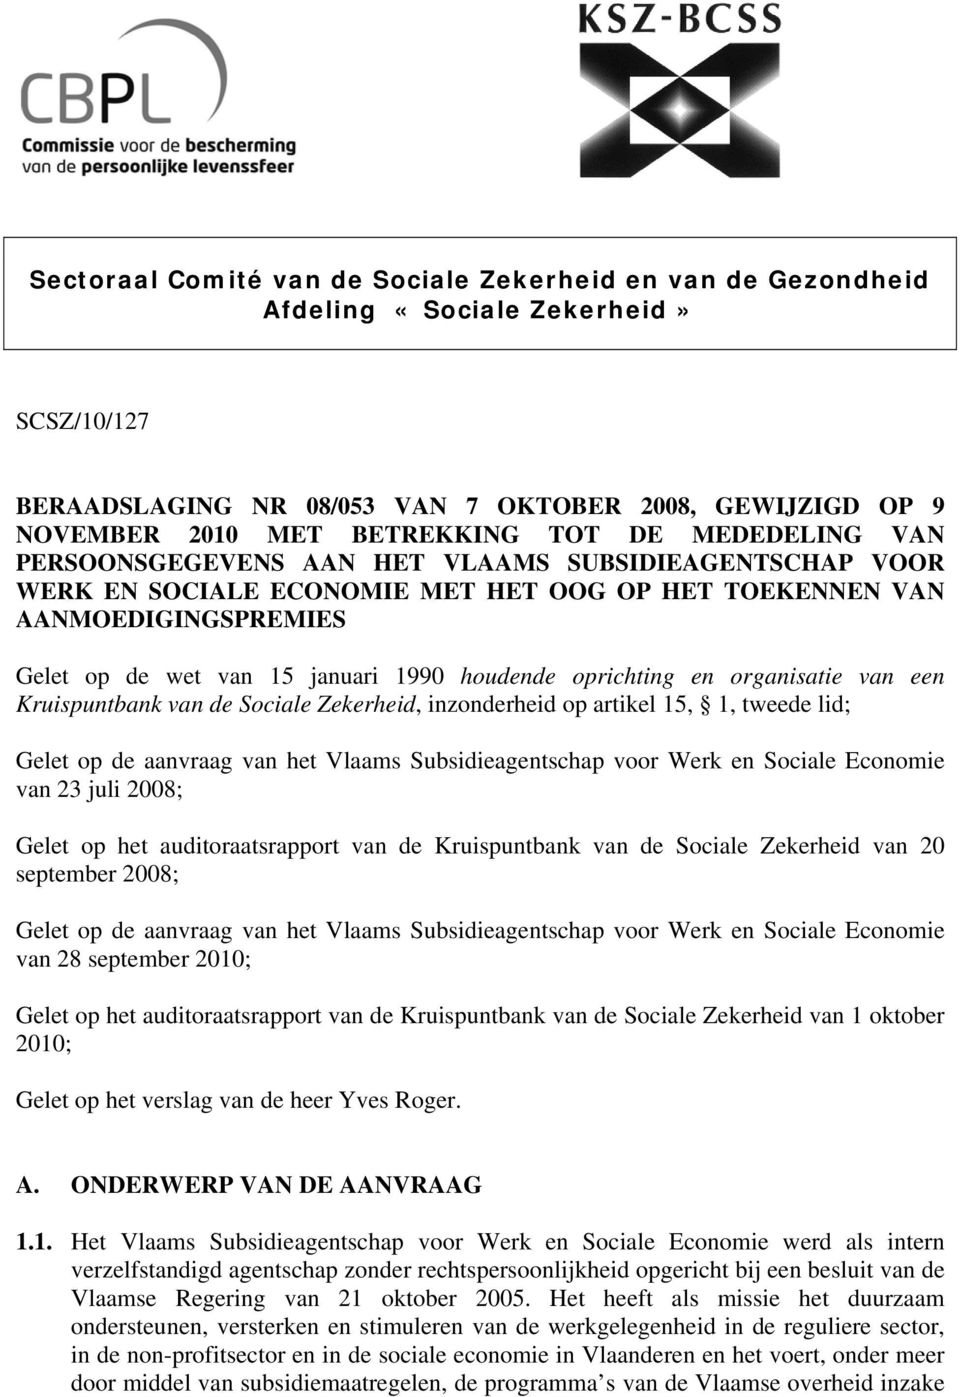 oprichting en organisatie van een Kruispuntbank van de Sociale Zekerheid, inzonderheid op artikel 15, 1, tweede lid; Gelet op de aanvraag van het Vlaams Subsidieagentschap voor Werk en Sociale